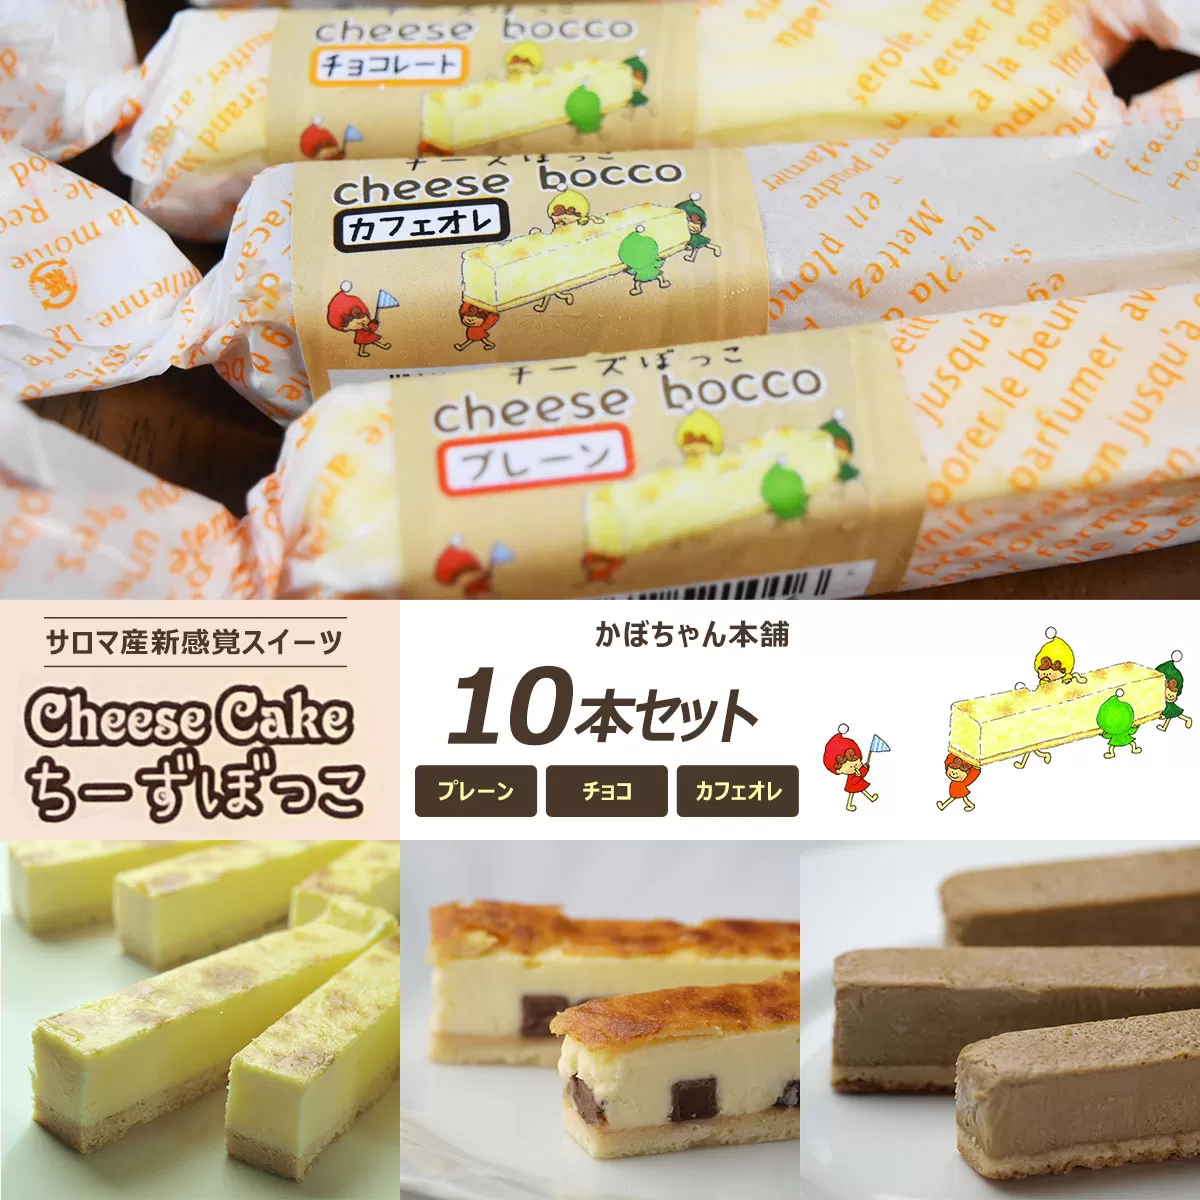 サロマ産新感覚スイーツ「チーズぼっこ」(プレーン・チョコ・カフェオレ)10本 セット SRML001